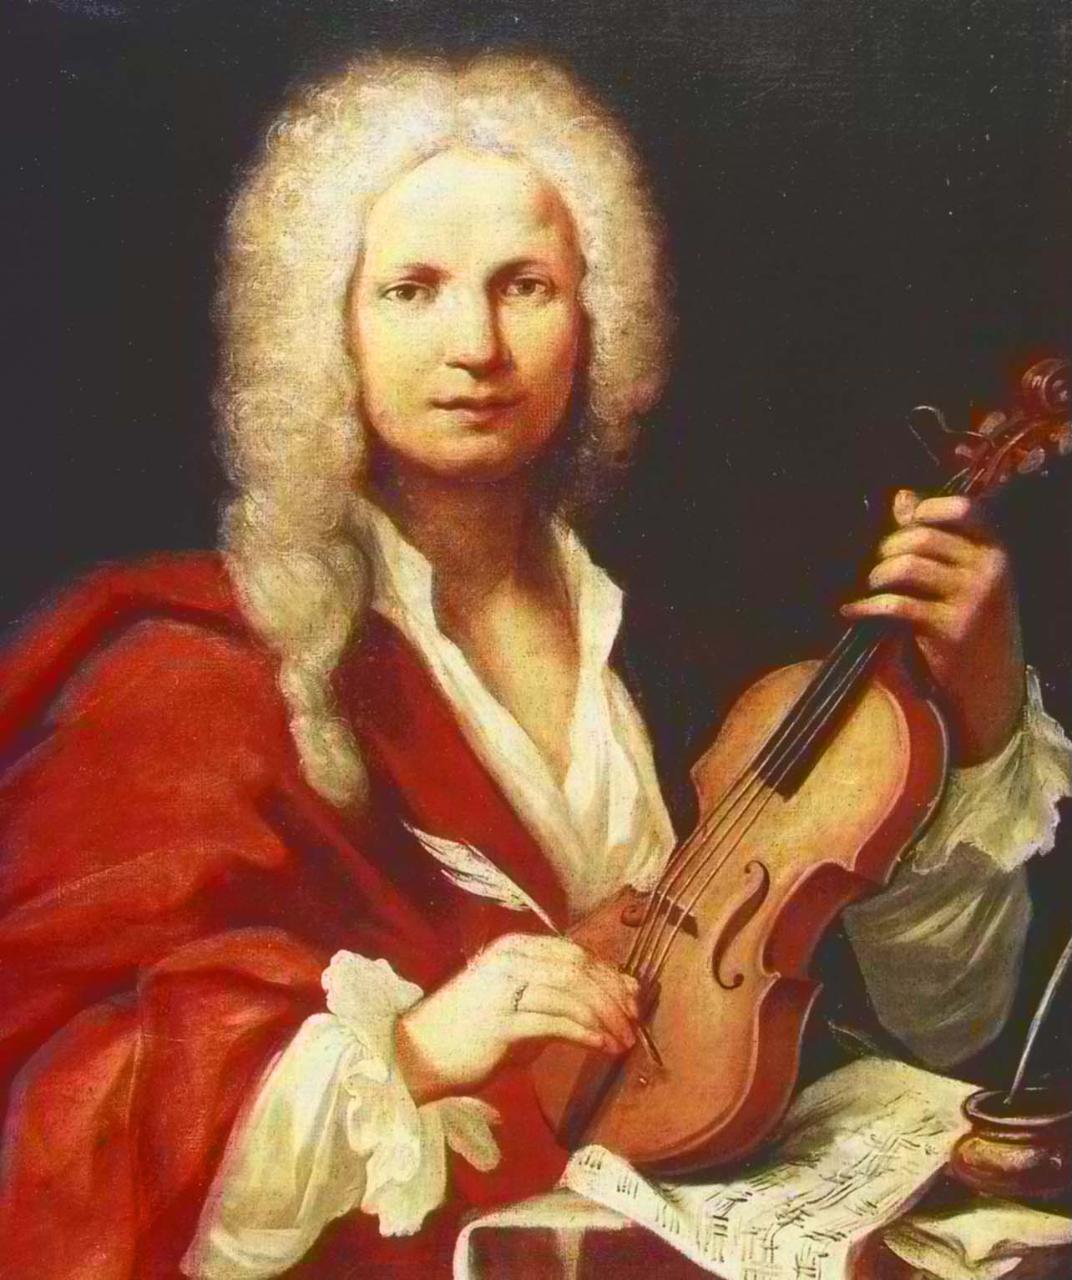 Il Prete Rosso: Vivaldi e i Segreti di Venezia - Visita Guidata Virtuale  